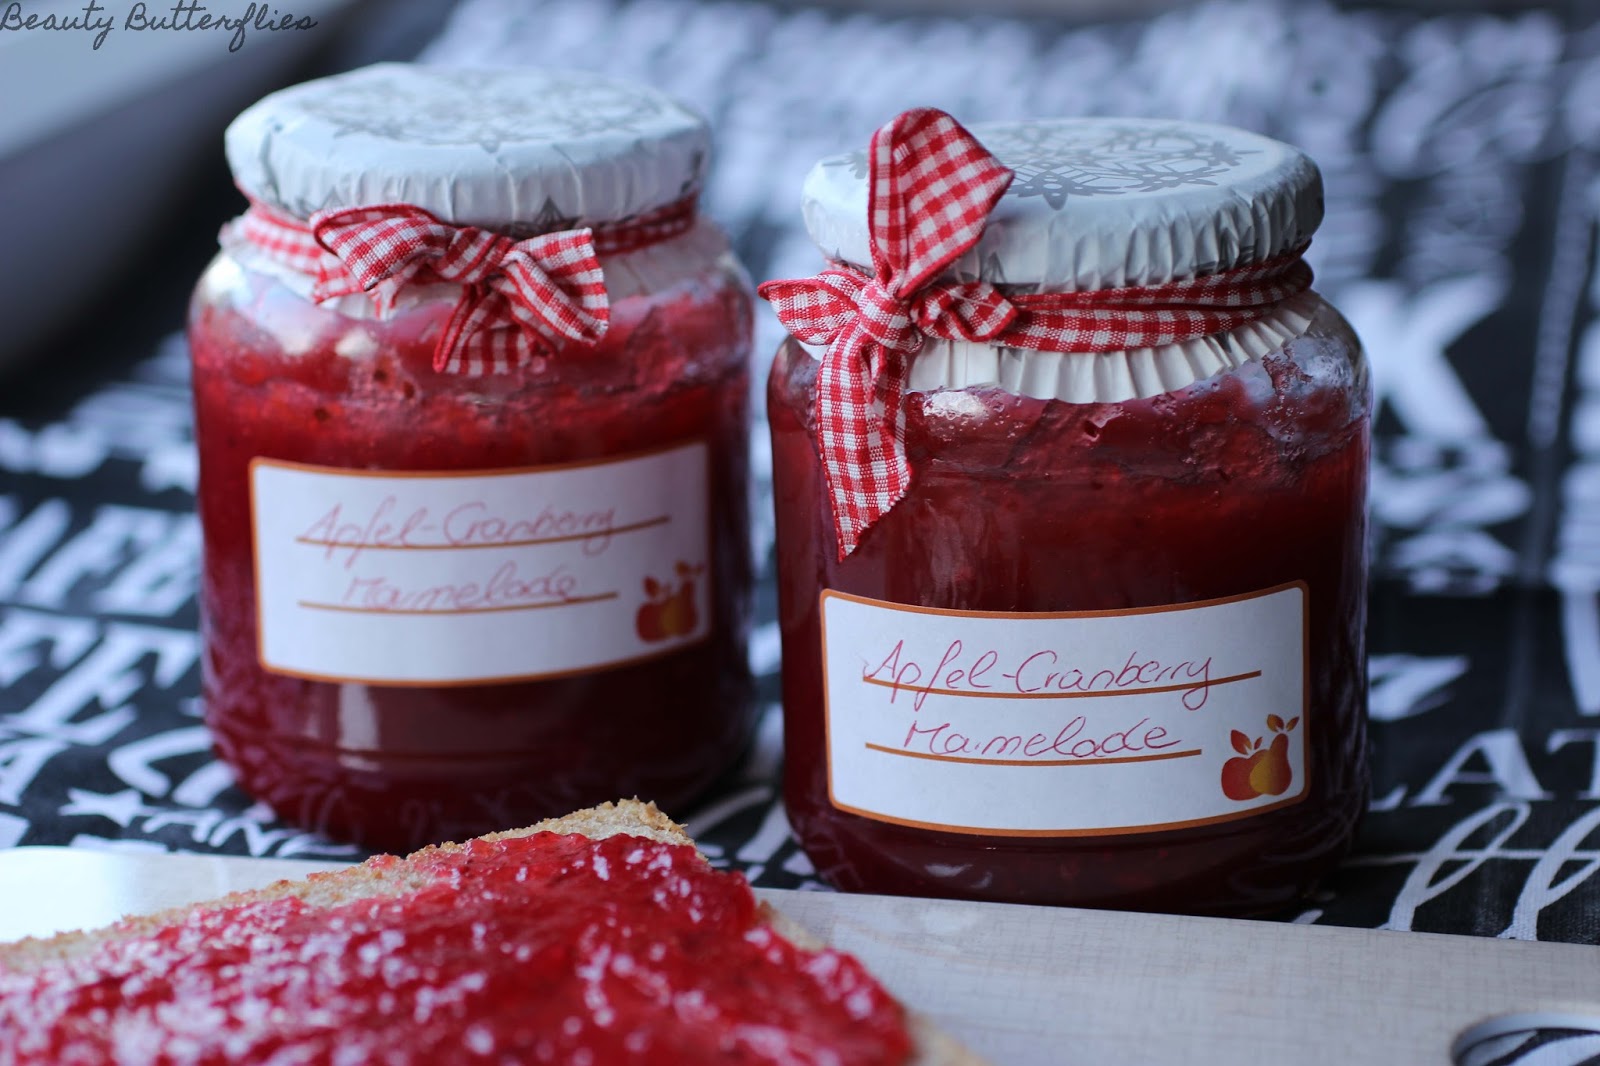 [Rezept] Apfel-Cranberry-Marmelade | Beauty Butterflies | Bloglovin’